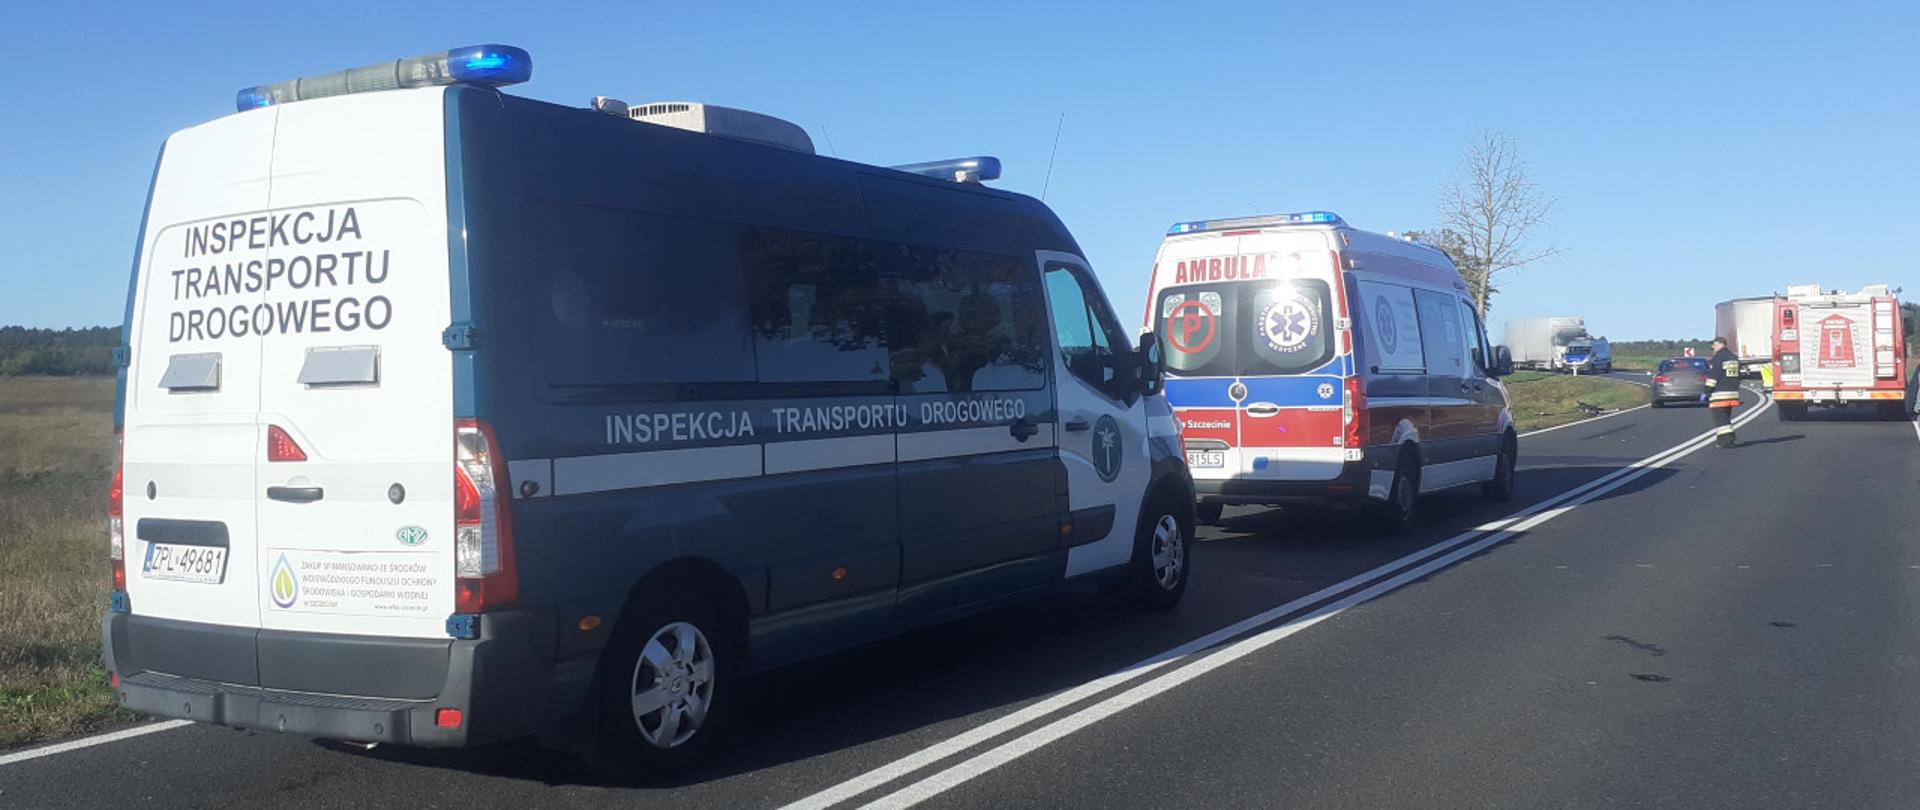 Patrol zachodniopomorskiej Inspekcji Transportu Drogowego na miejscu śmiertelnego wypadku koło Wałcza.